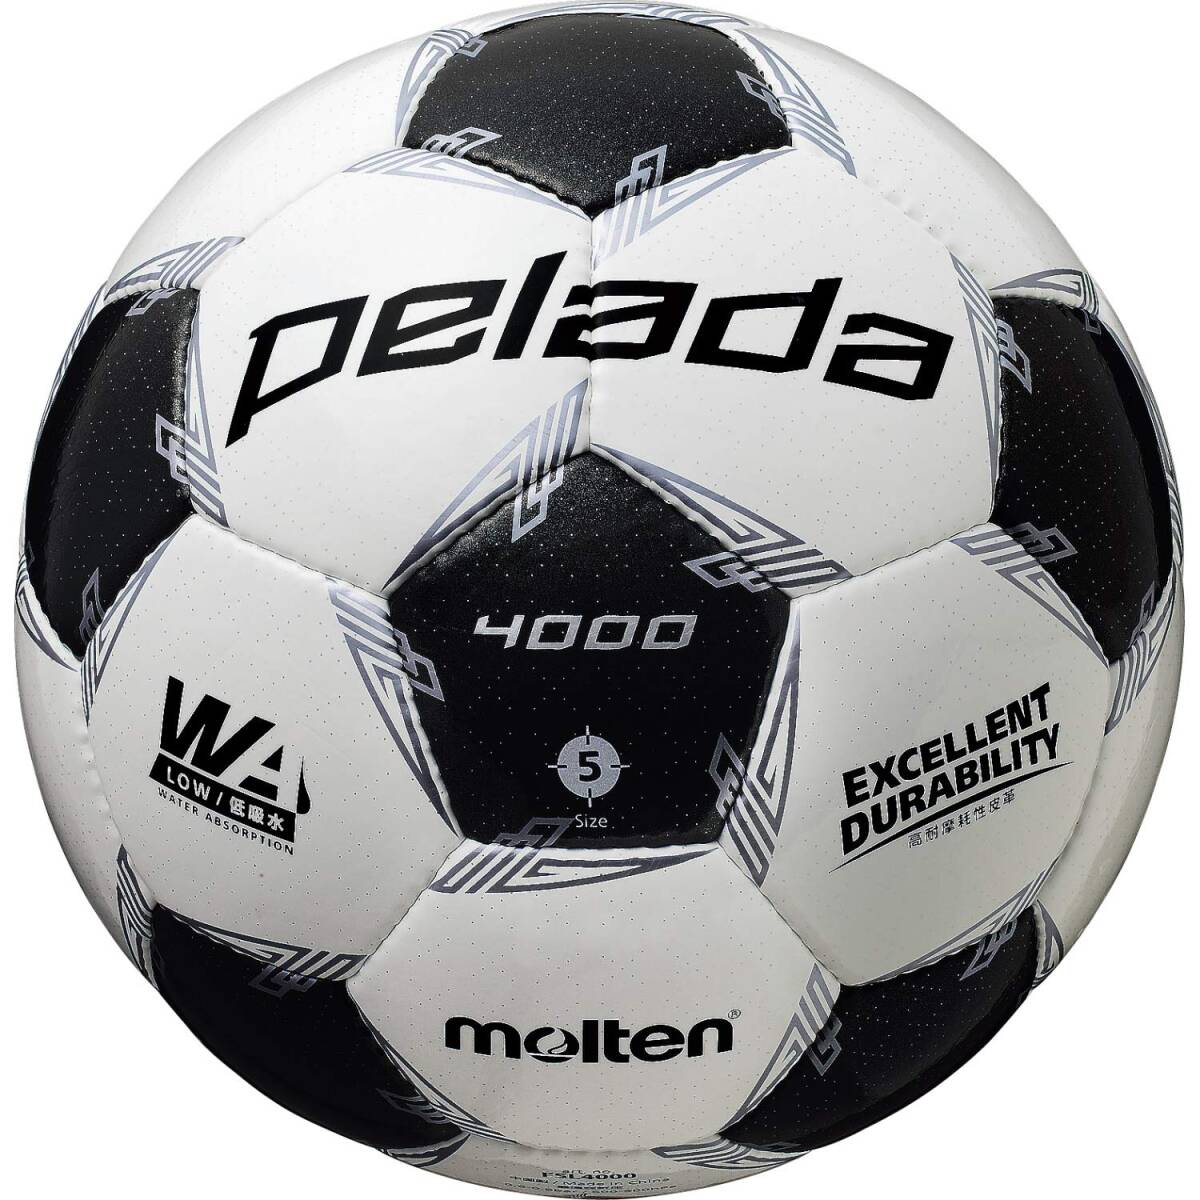 Расплавленный футбольный мяч No 5 для учащихся младших классов средней школы и выше Тестовый мяч Pereda 4000 F5L4000 белый × металлик черный F5L40